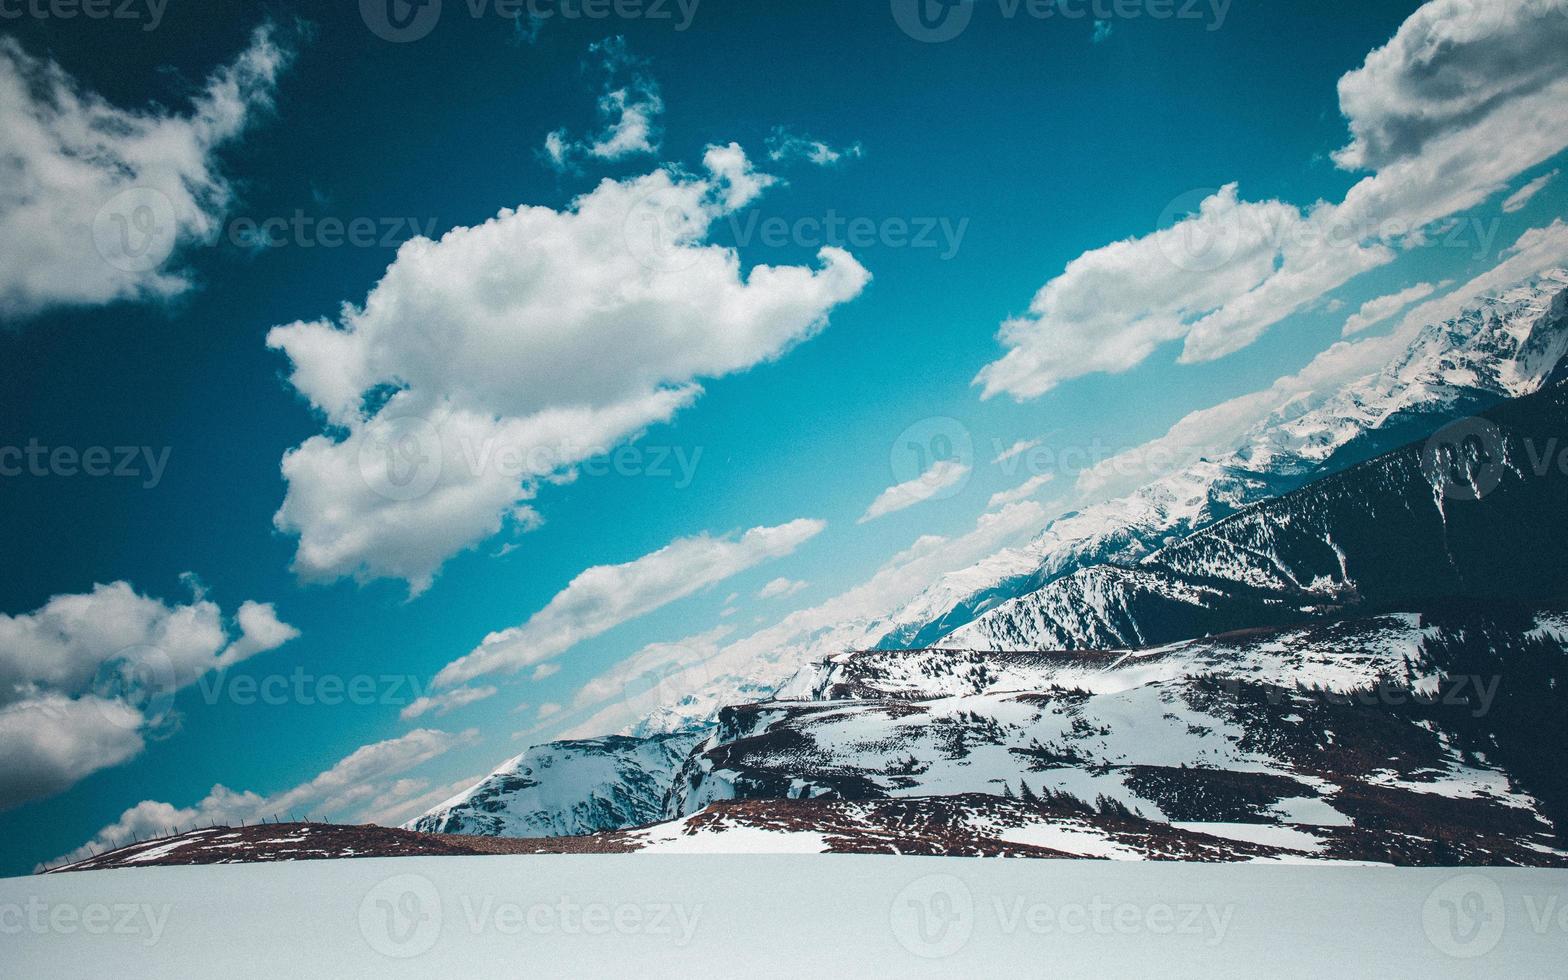 une photo angulaire de montagnes enneigées sous des nuages duveteux